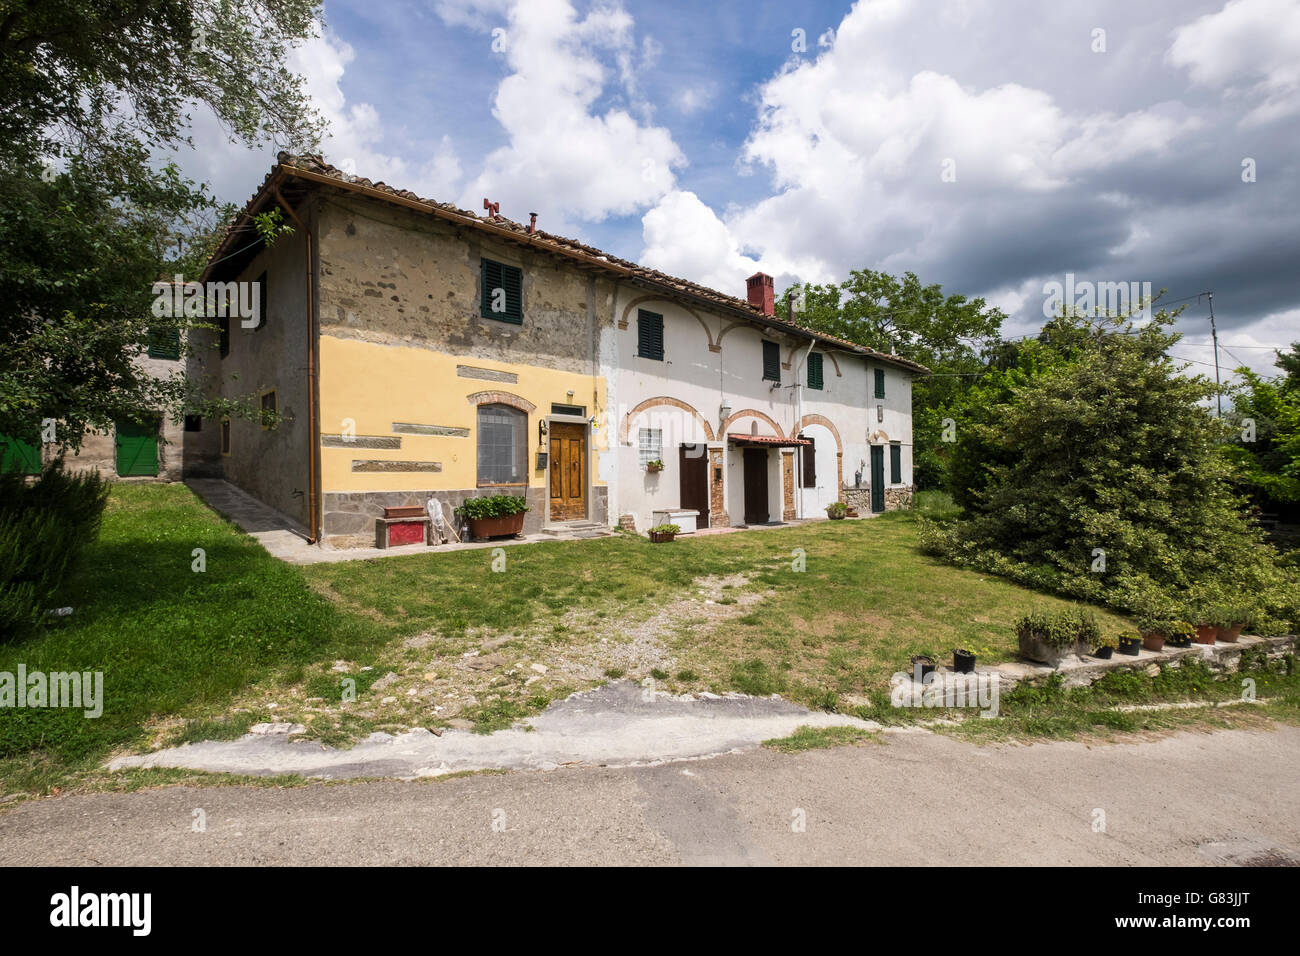 Row of renovated old houses on the Via Lumena near Sant Agata, Tuscany, Italy Stock Photo